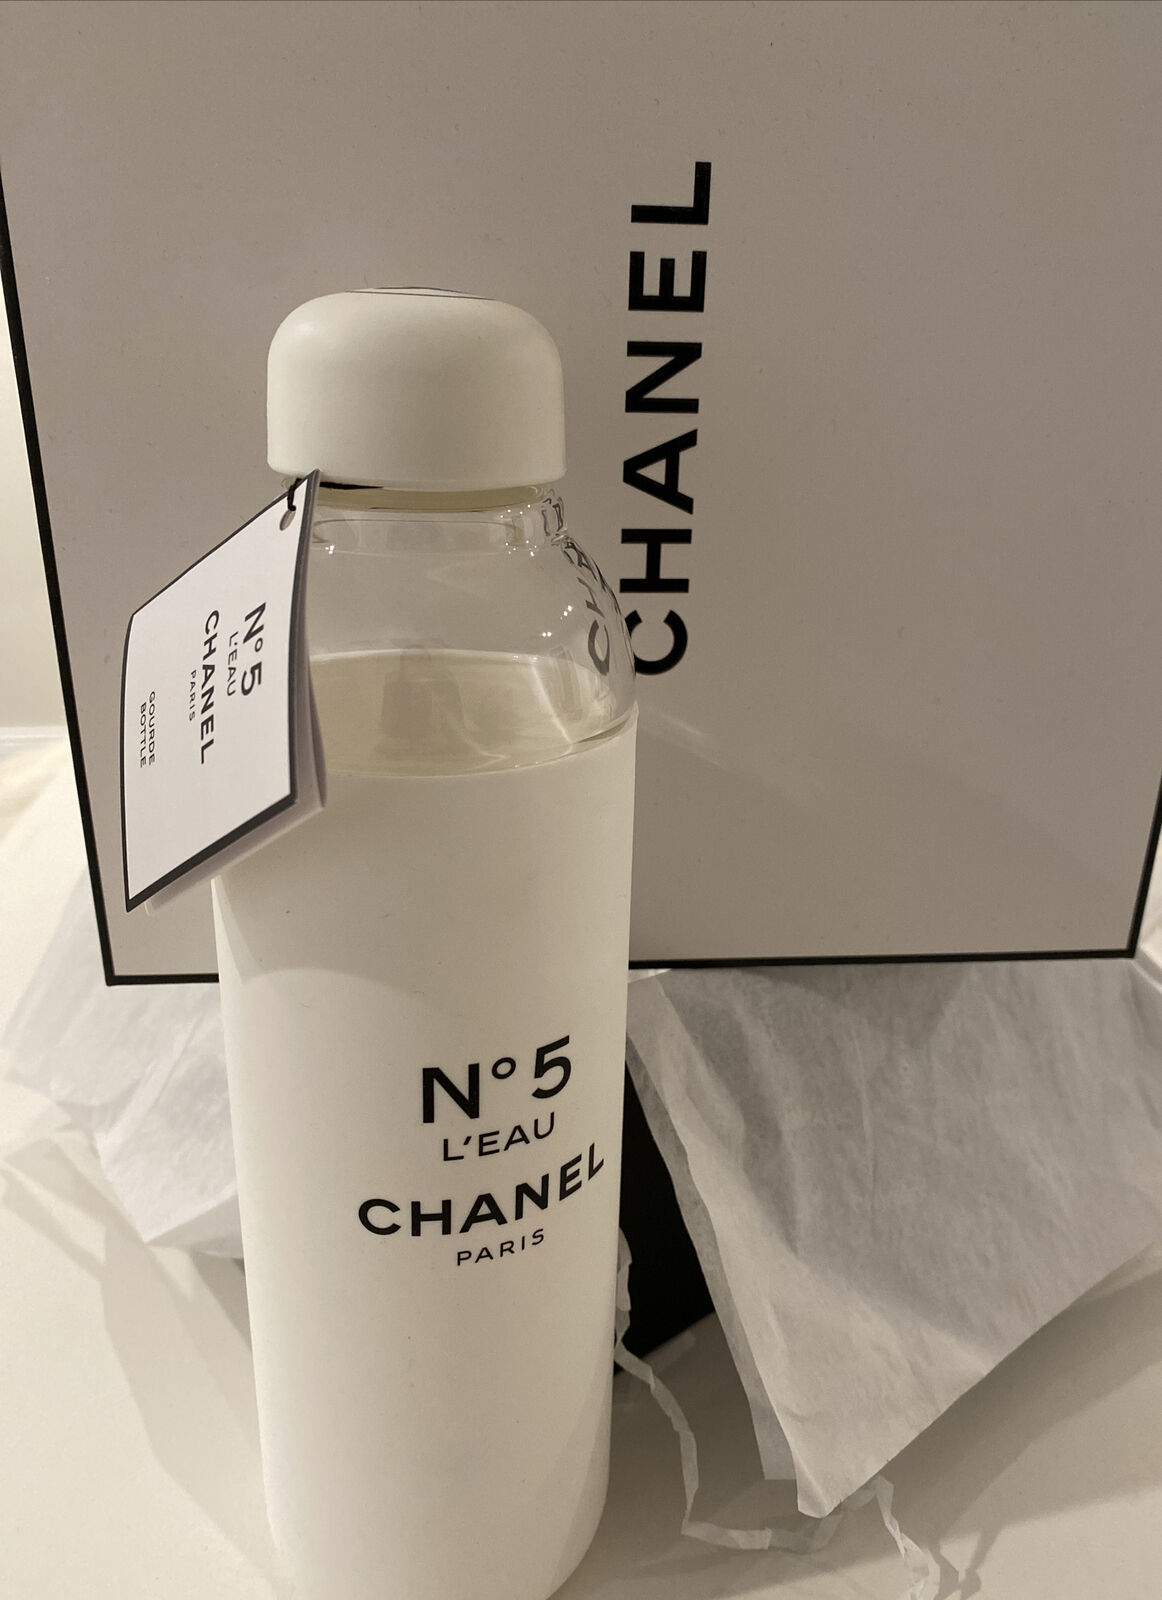 Chanel taps Baccarat for biggest-ever N°5 bottle